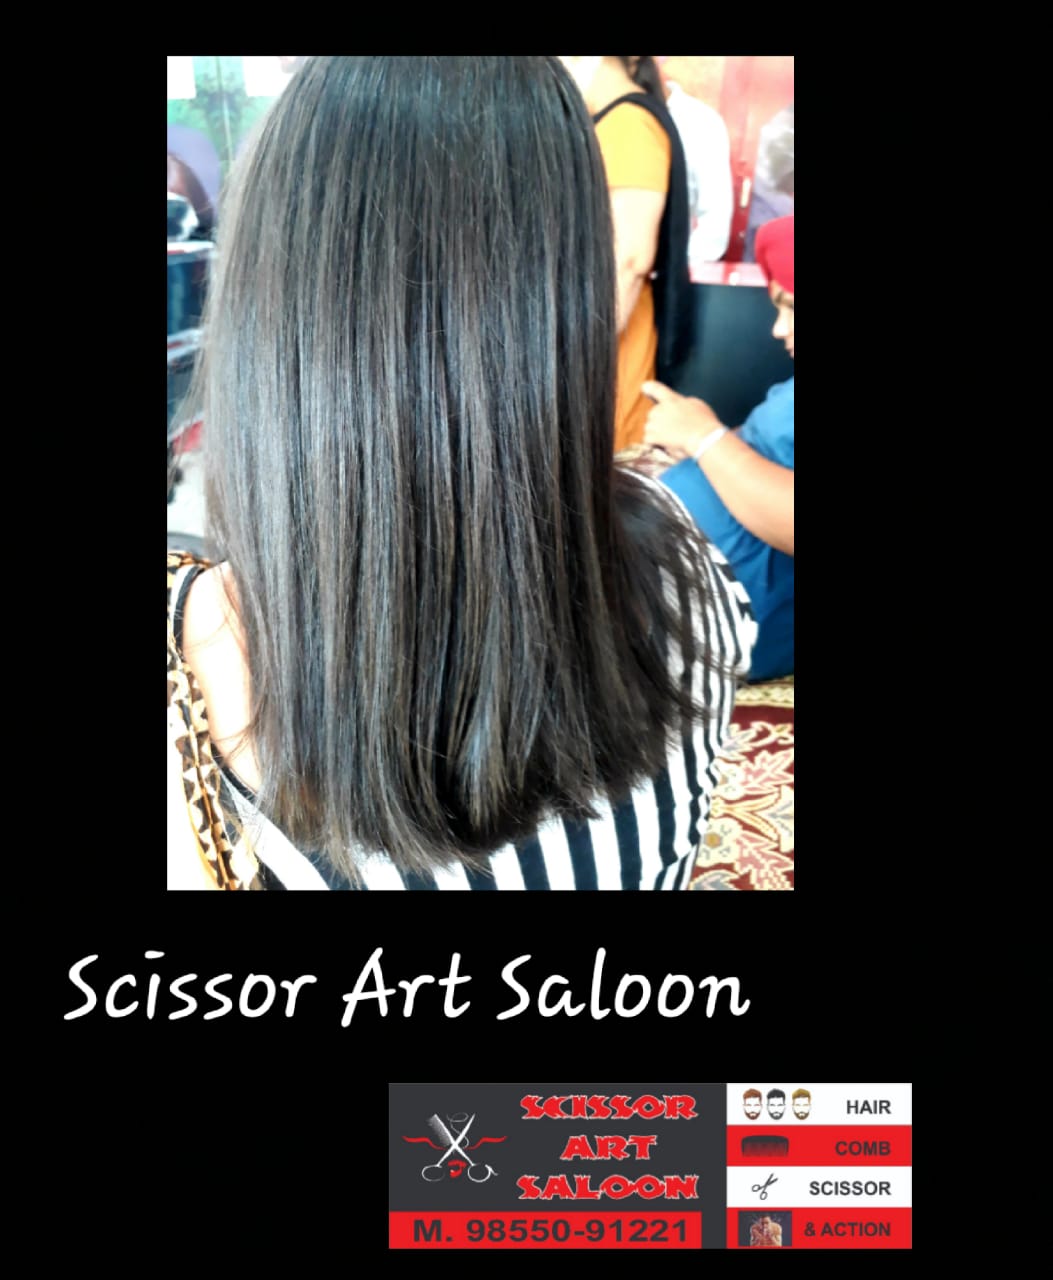 Scissor Art Salon